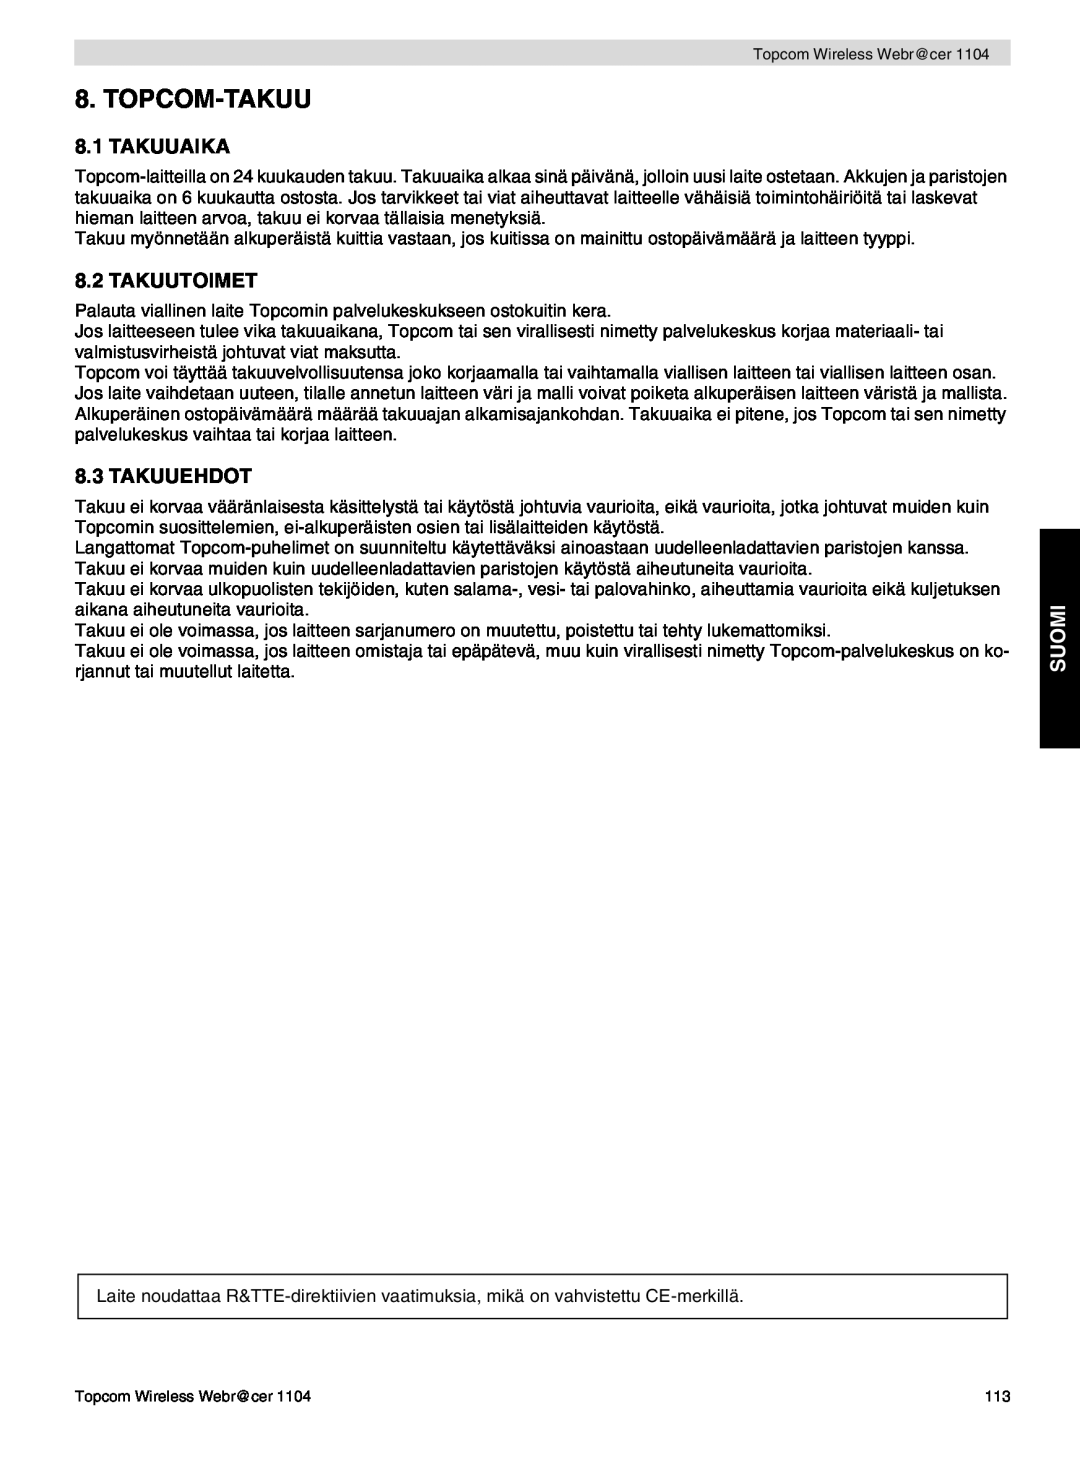 Topcom 1104 manual do utilizador Topcom-Takuu, Takuuaika, Takuutoimet, Takuuehdot, Suomi 